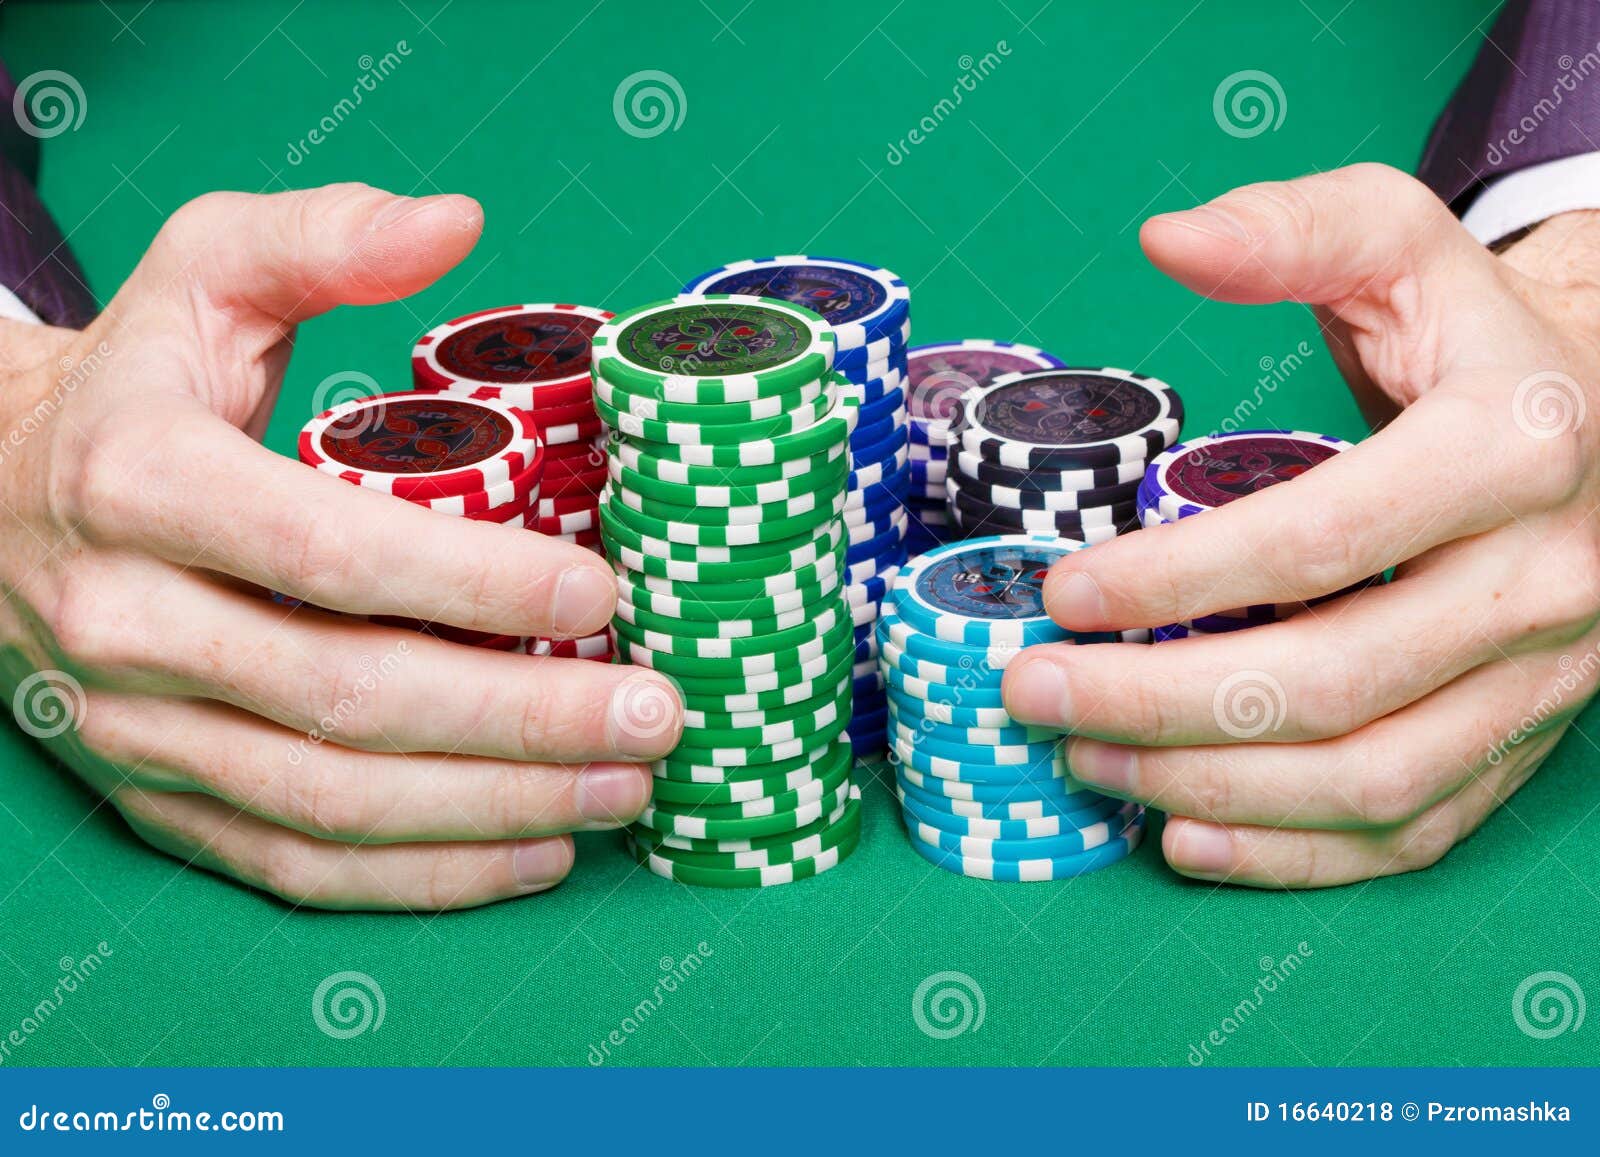 В какой руке фишка. Фишки для покера в руках. Фишка в руке. На ладони фишки казино. Стопка фишек в руке.